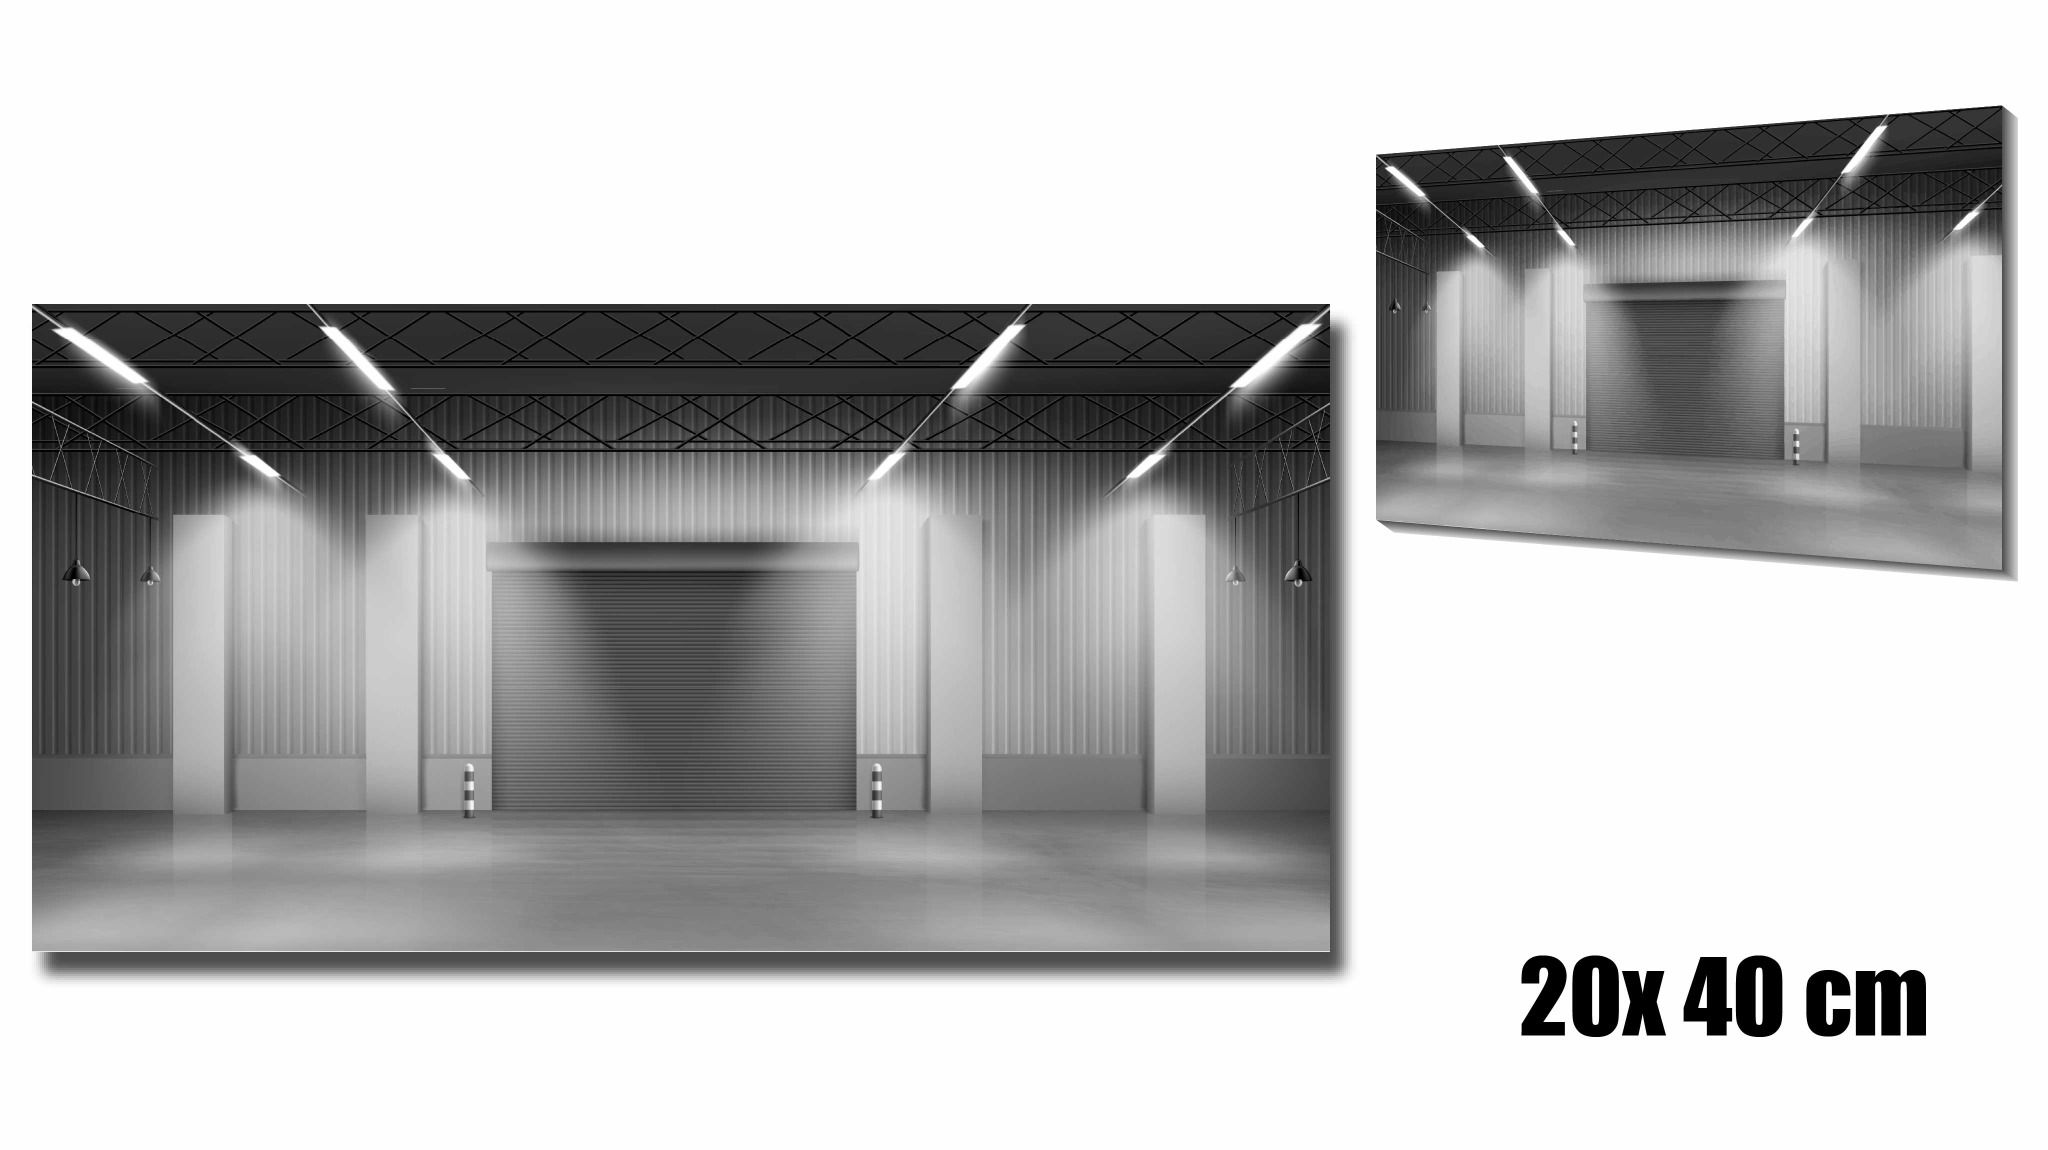  Diorama trưng bày 1 mặt background garage light gray dành cho mô hình DR016 